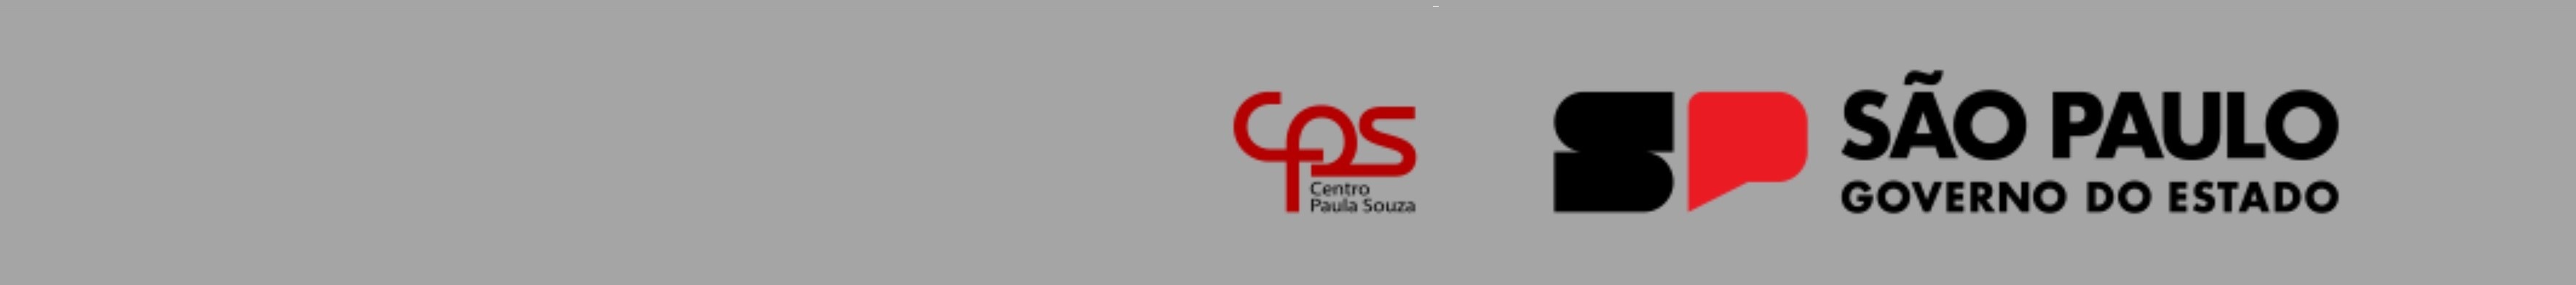 Centro Paula Souza